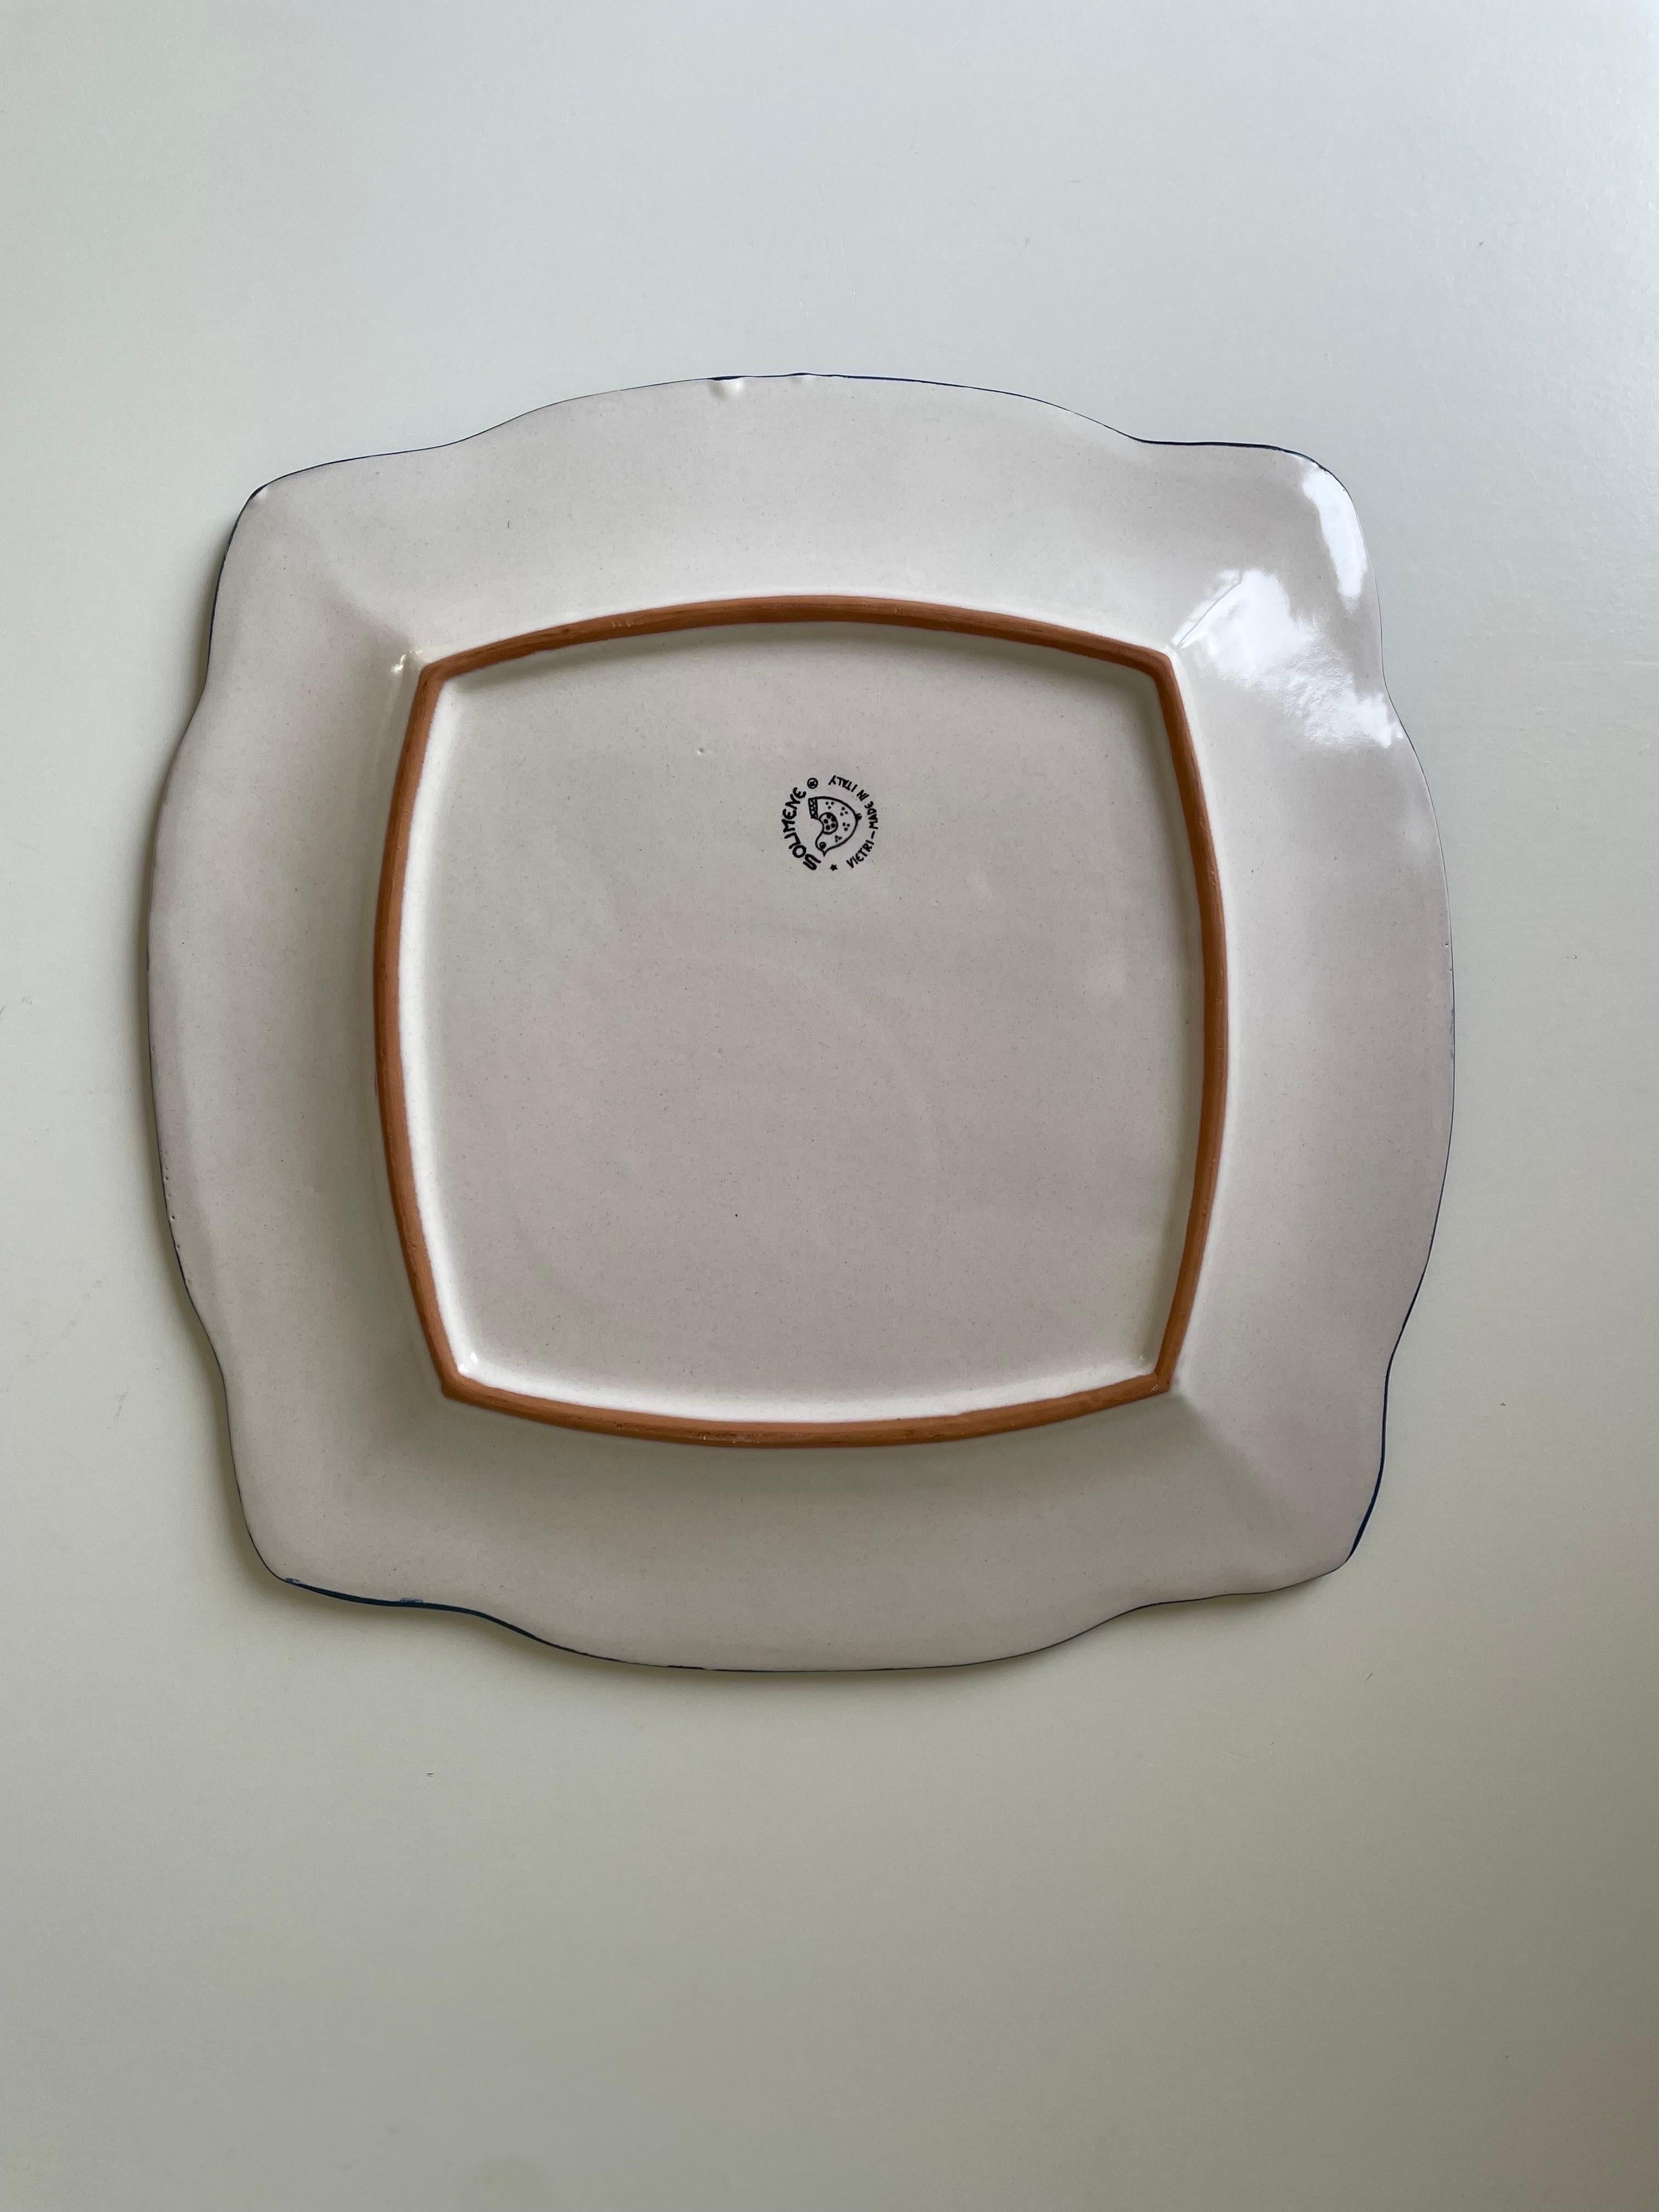 Ceramica Artistica Solimene Blue, White and Orange Decorative Dish Plate, Italy 7